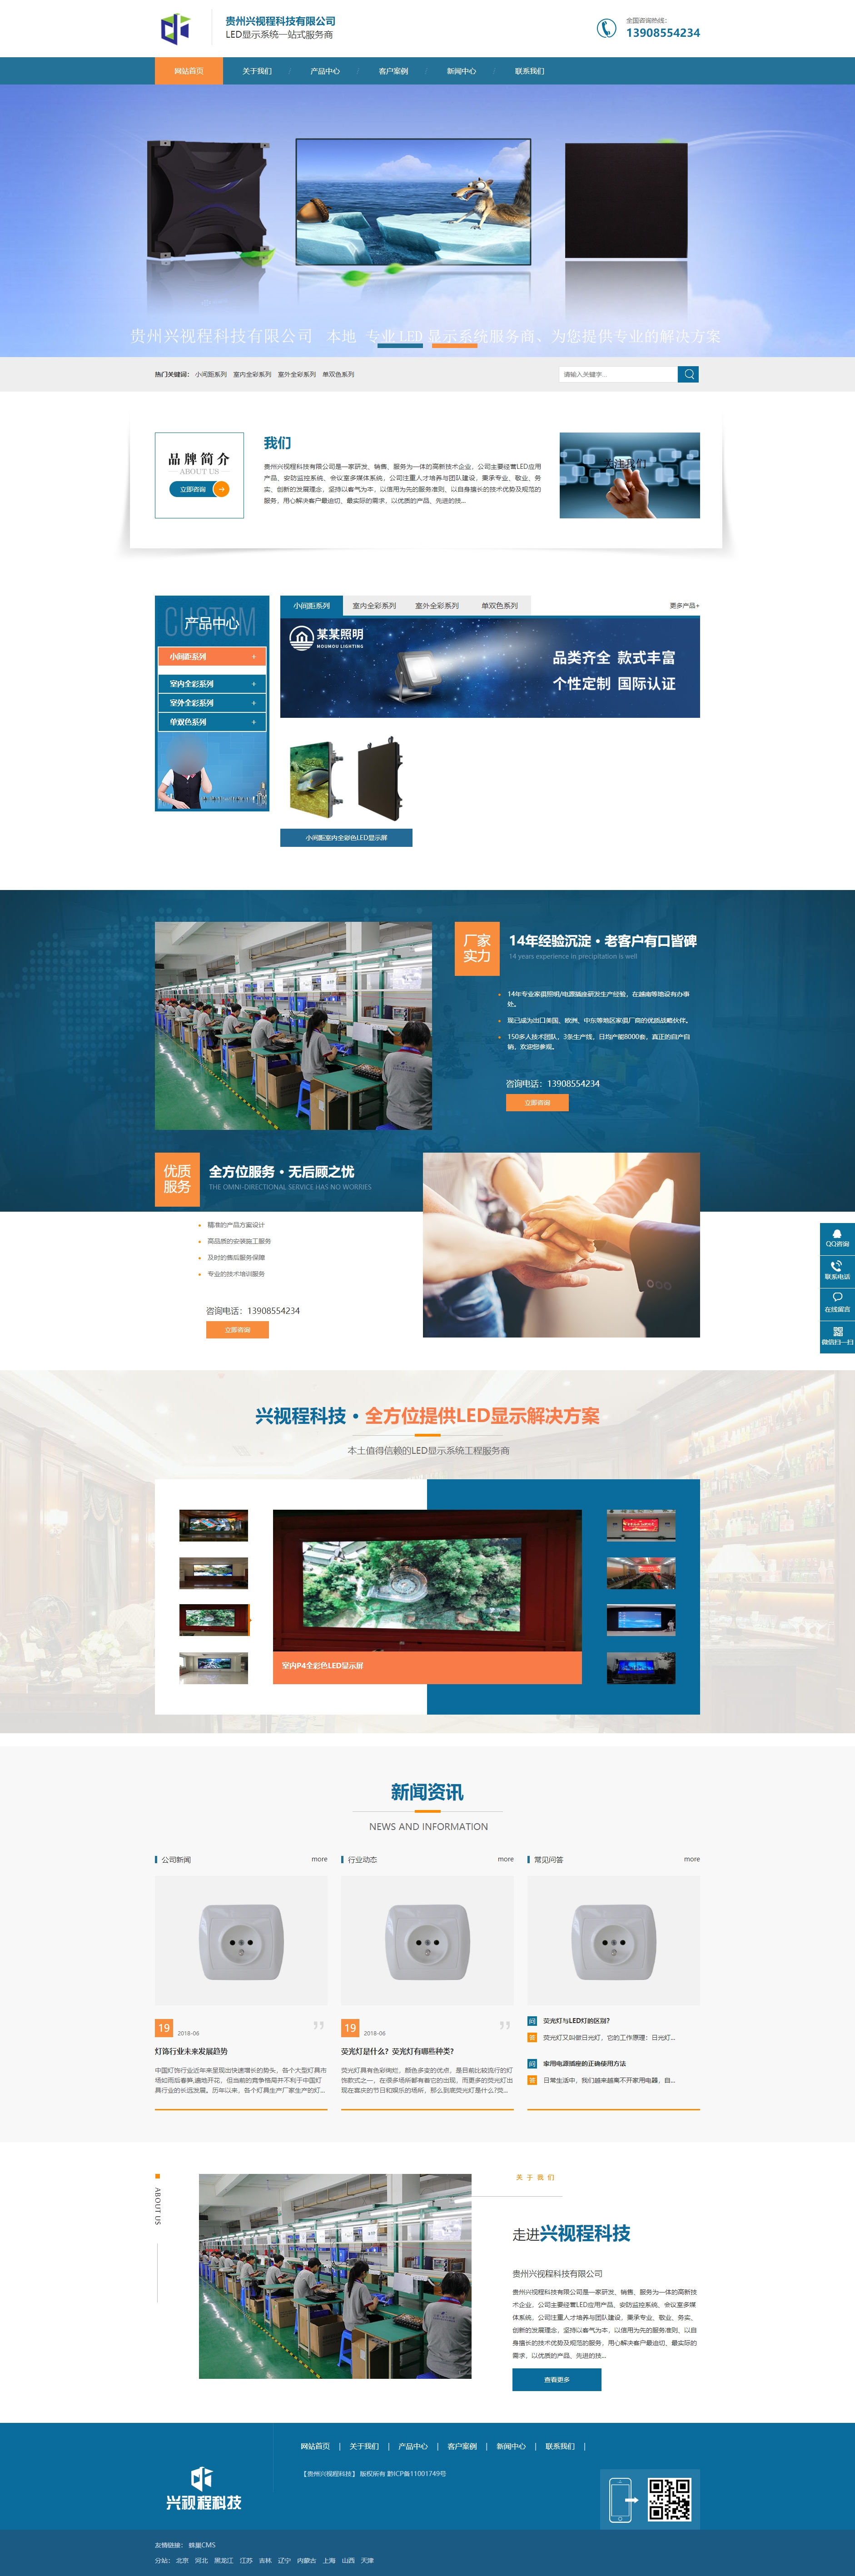 贵州兴视程科技有限公司 网站正式上线